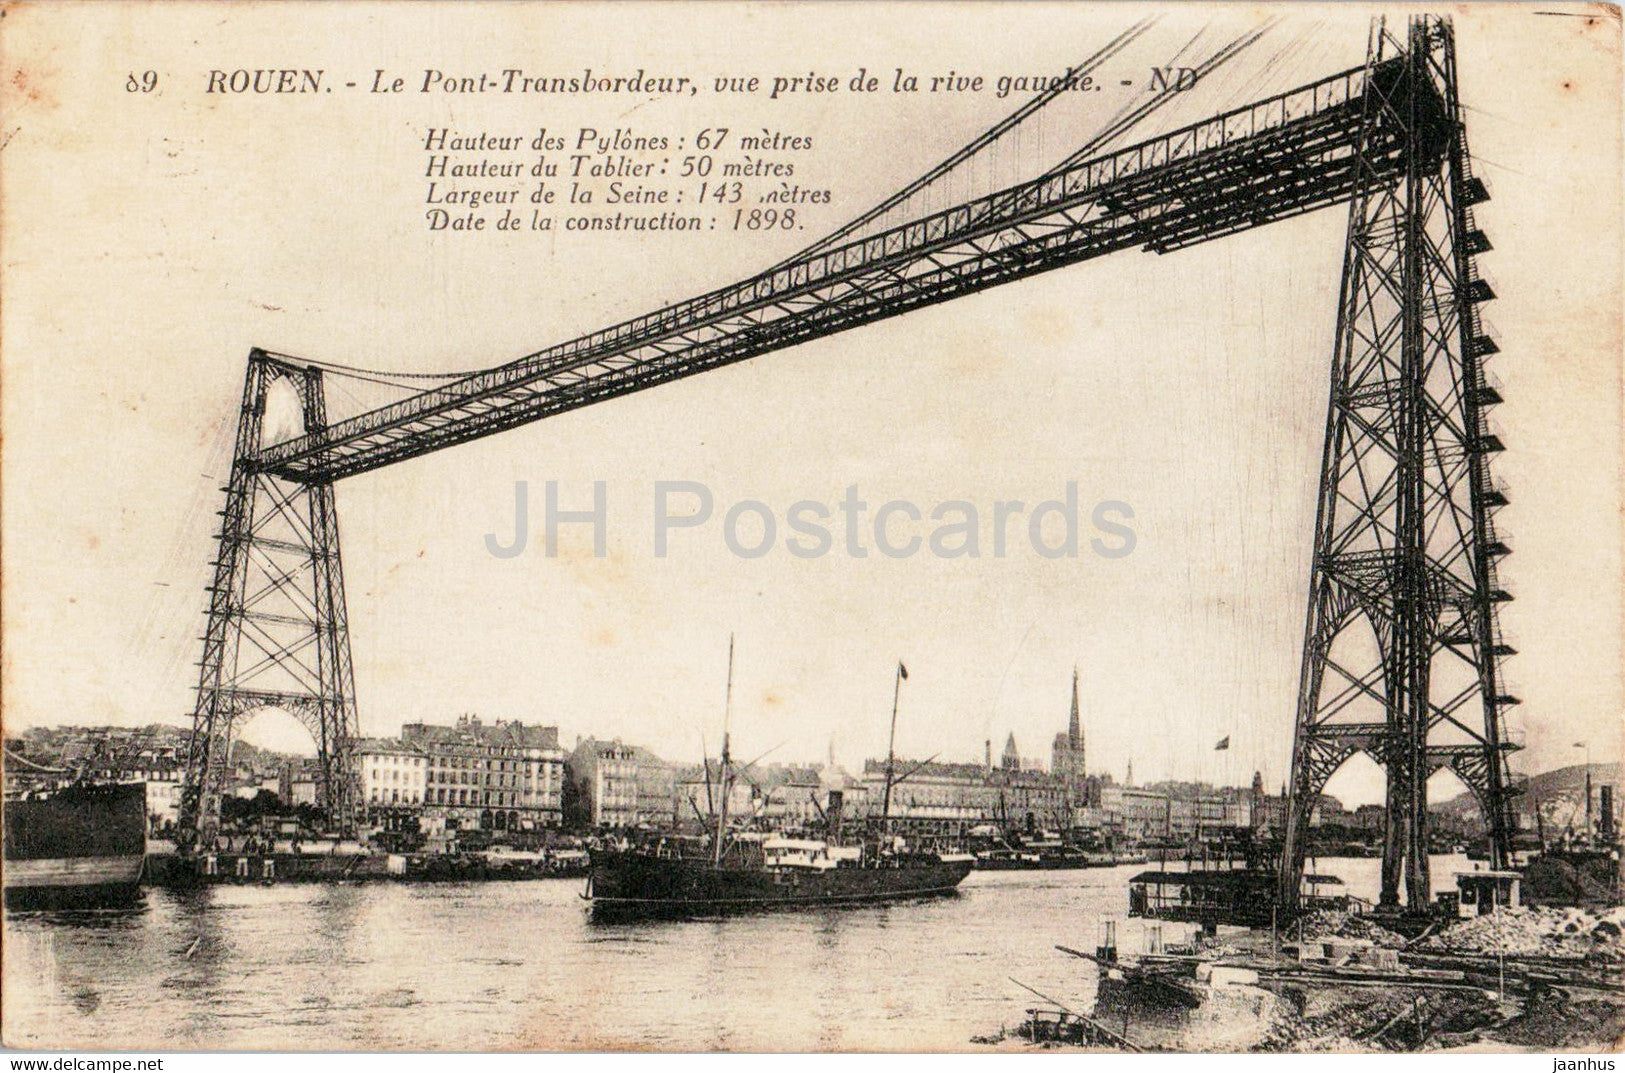 Rouen - Le Pont Transbordeur vue prise de la rive gauche - ship - 89 - old postcard - France - used - JH Postcards